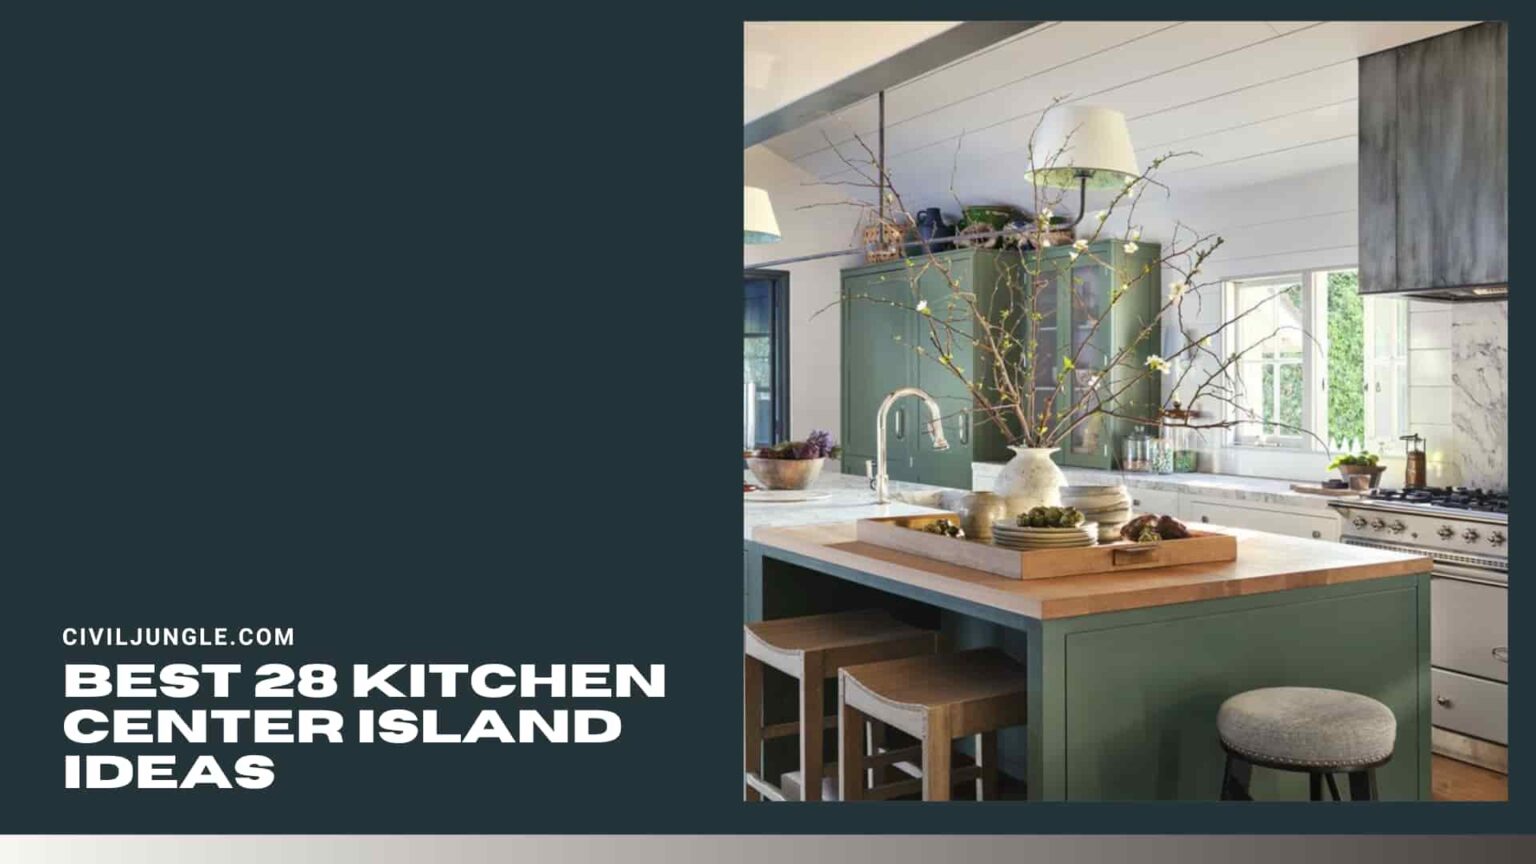 Best 28 Kitchen Center Island Ideas 1536x864 